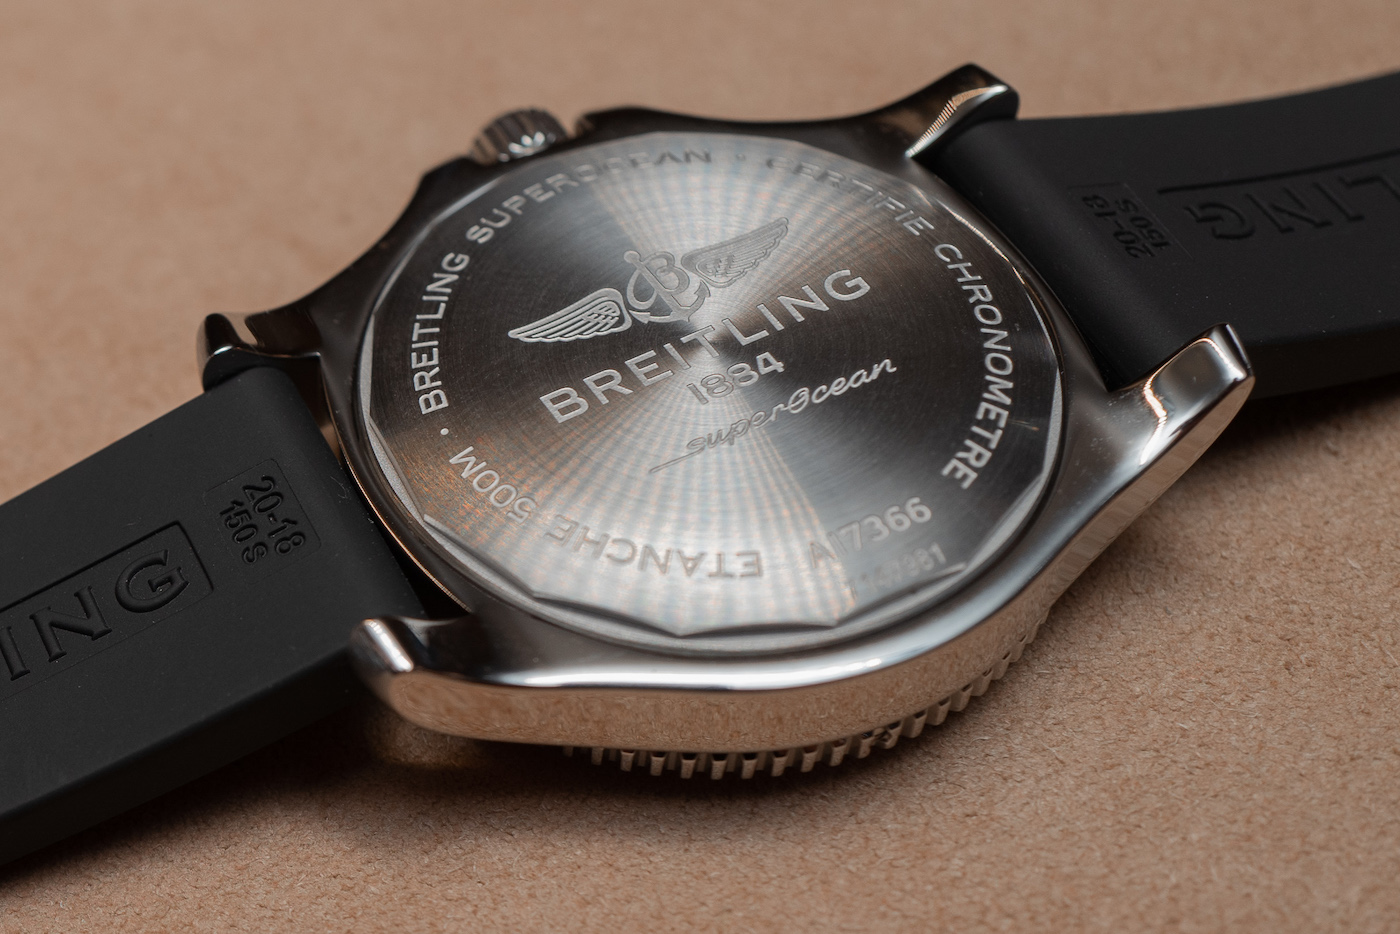 2019 年新款 Breitling Superocean Automatic 腕表評測 腕上評測 